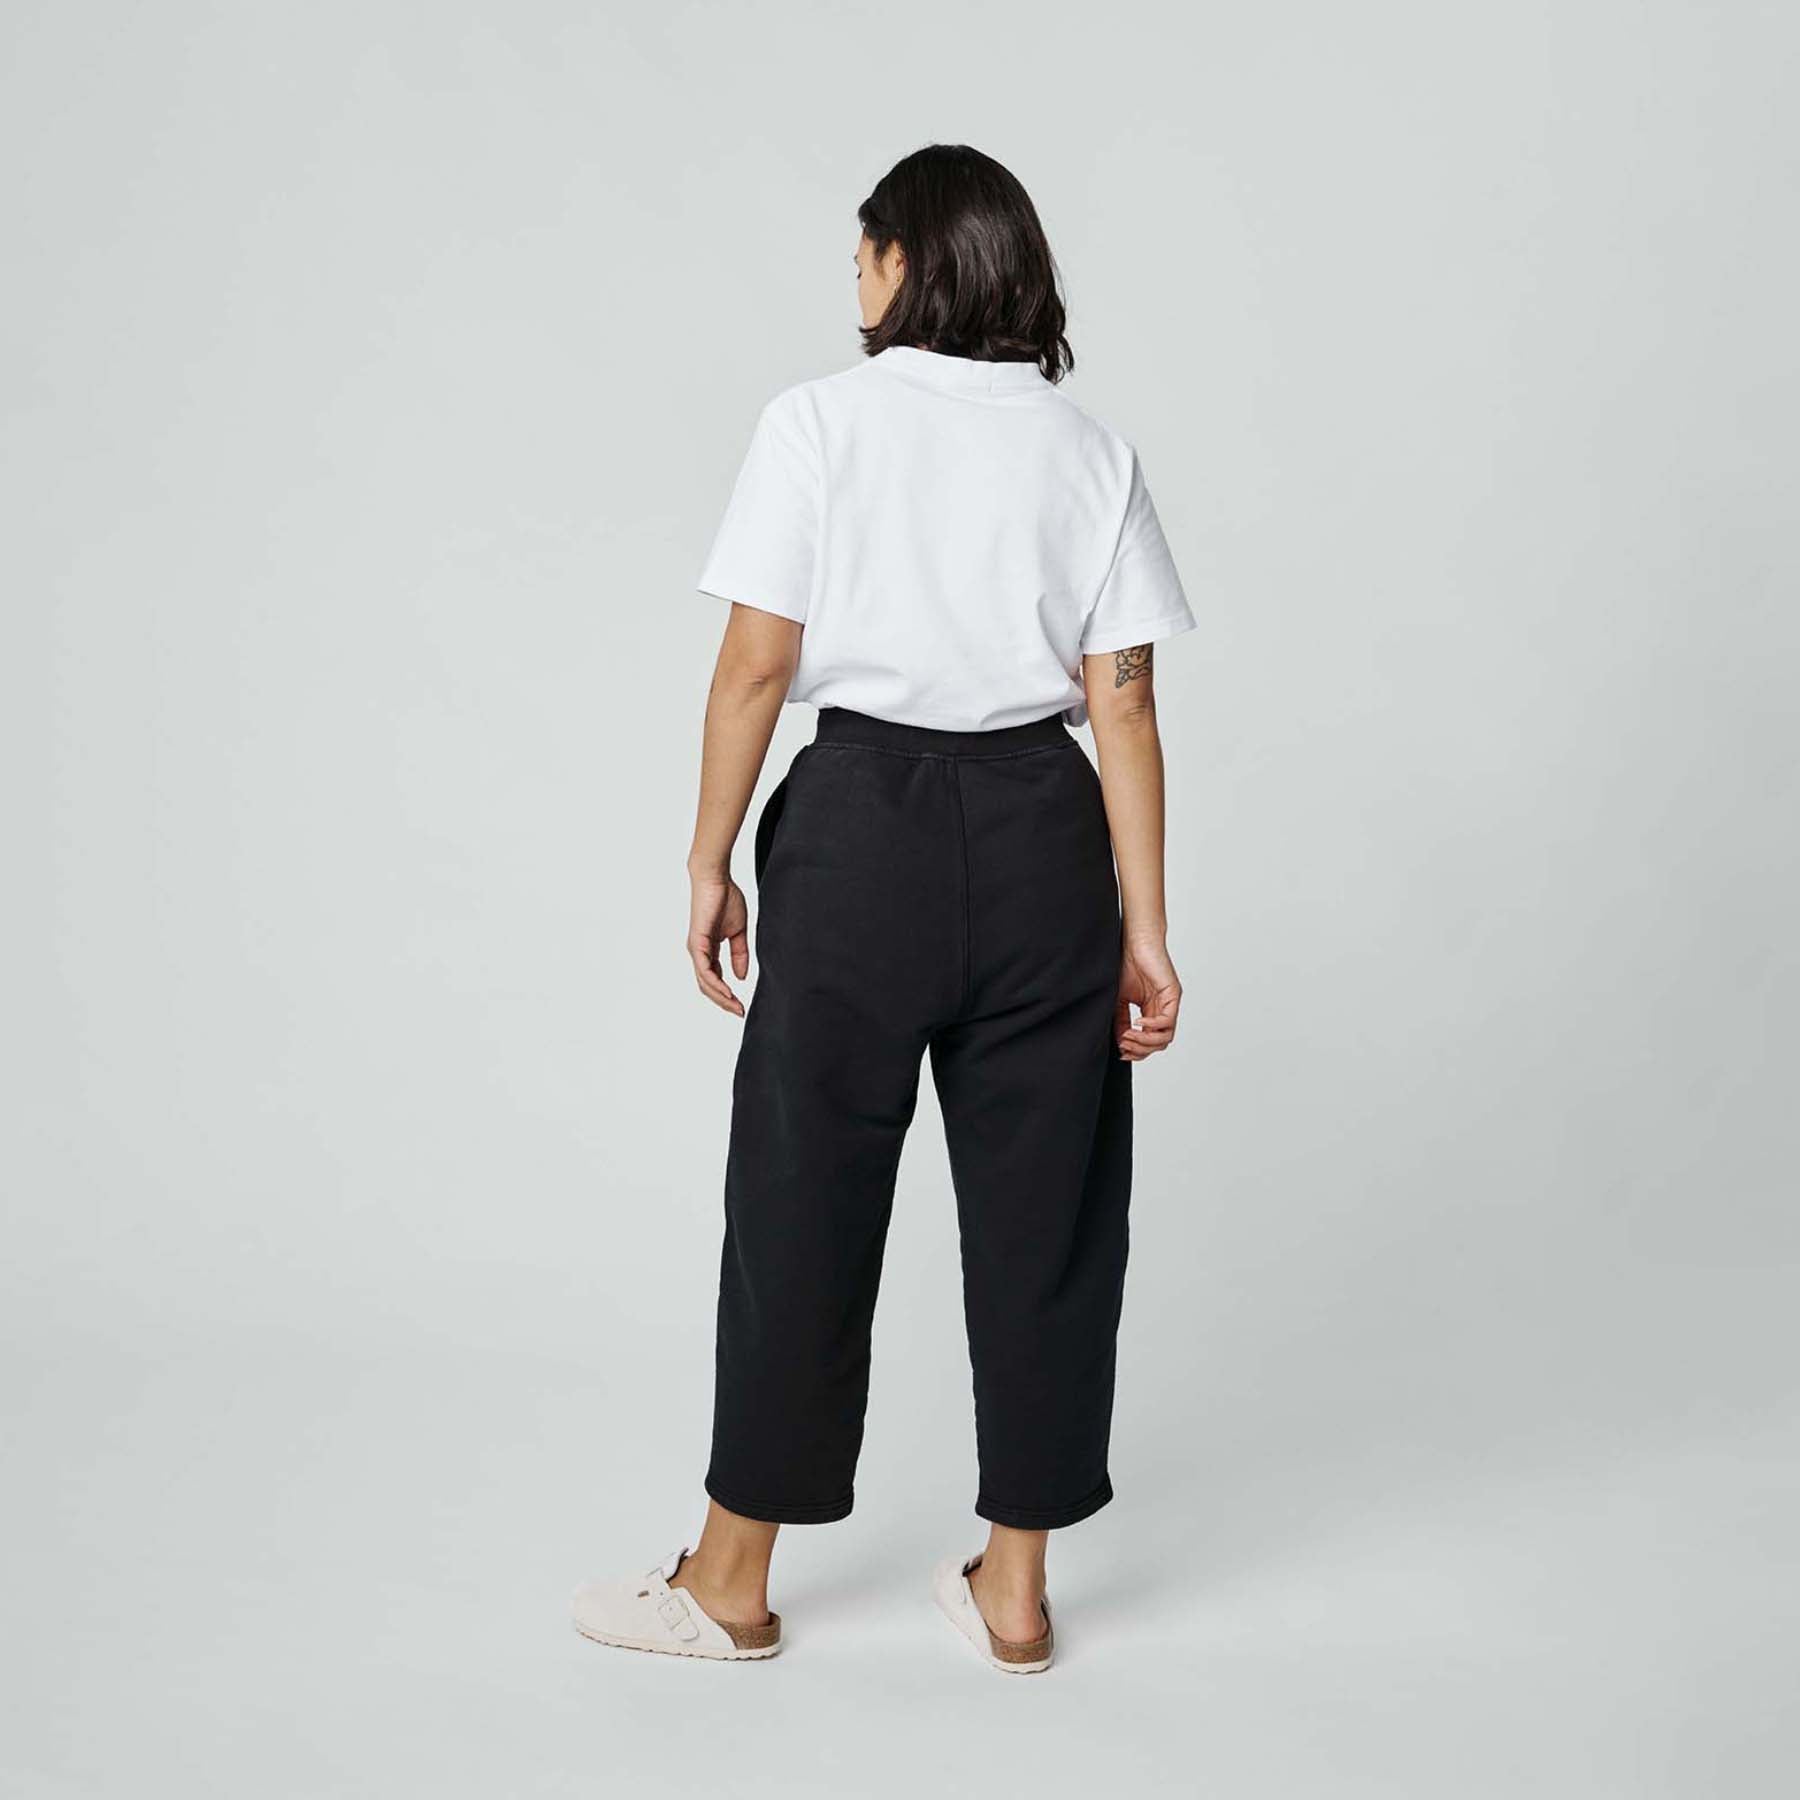 Pantalon Movement Femme - Noir